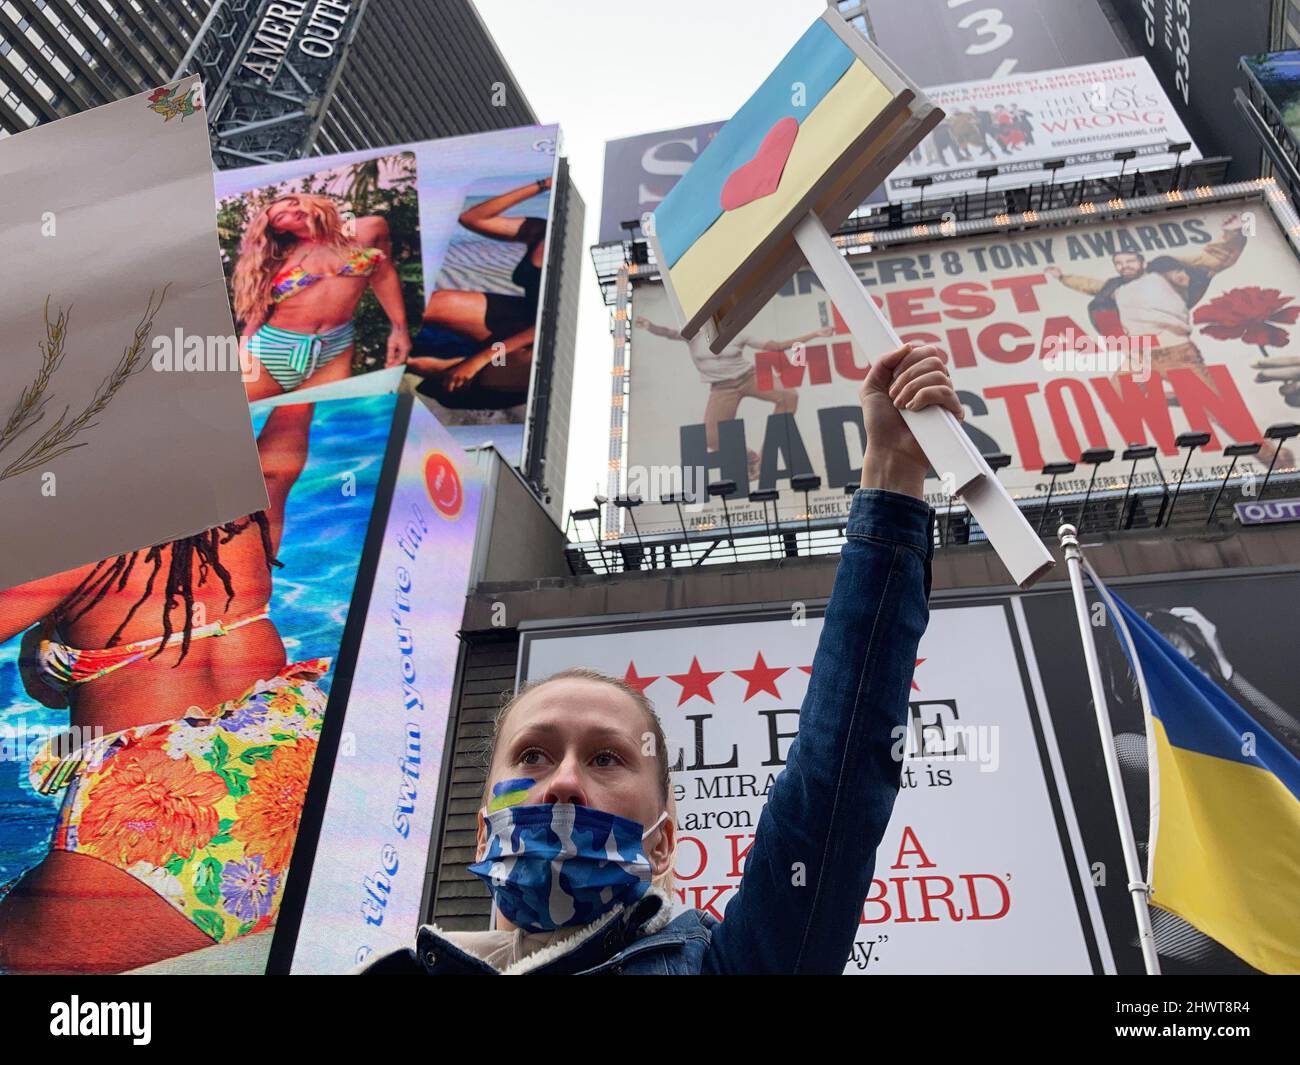 Les Ukrainiens-Américains et leurs partisans protestent contre l'invasion russe et manifestent leur soutien aux citoyens de l'Ukraine, à Times Square, à New York, le samedi 5 mars 2022. (© Frances M. Roberts) Banque D'Images